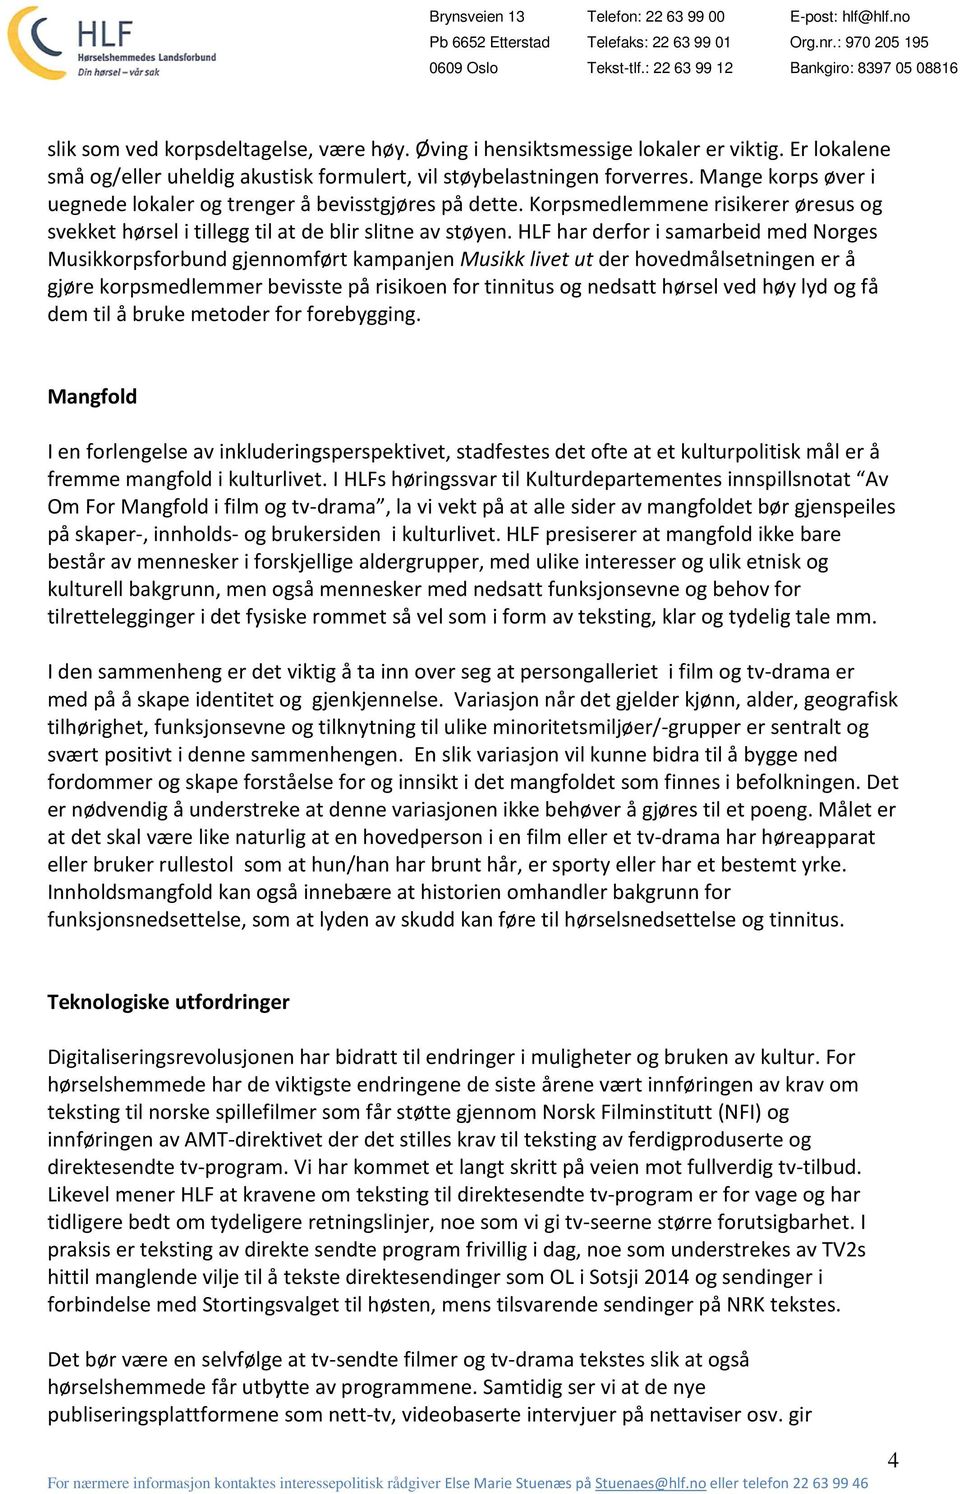 HLF har derfor i samarbeid med Norges Musikkorpsforbund gjennomført kampanjen Musikk livet ut der hovedmålsetningen er å gjøre korpsmedlemmer bevisste på risikoen for tinnitus og nedsatt hørsel ved